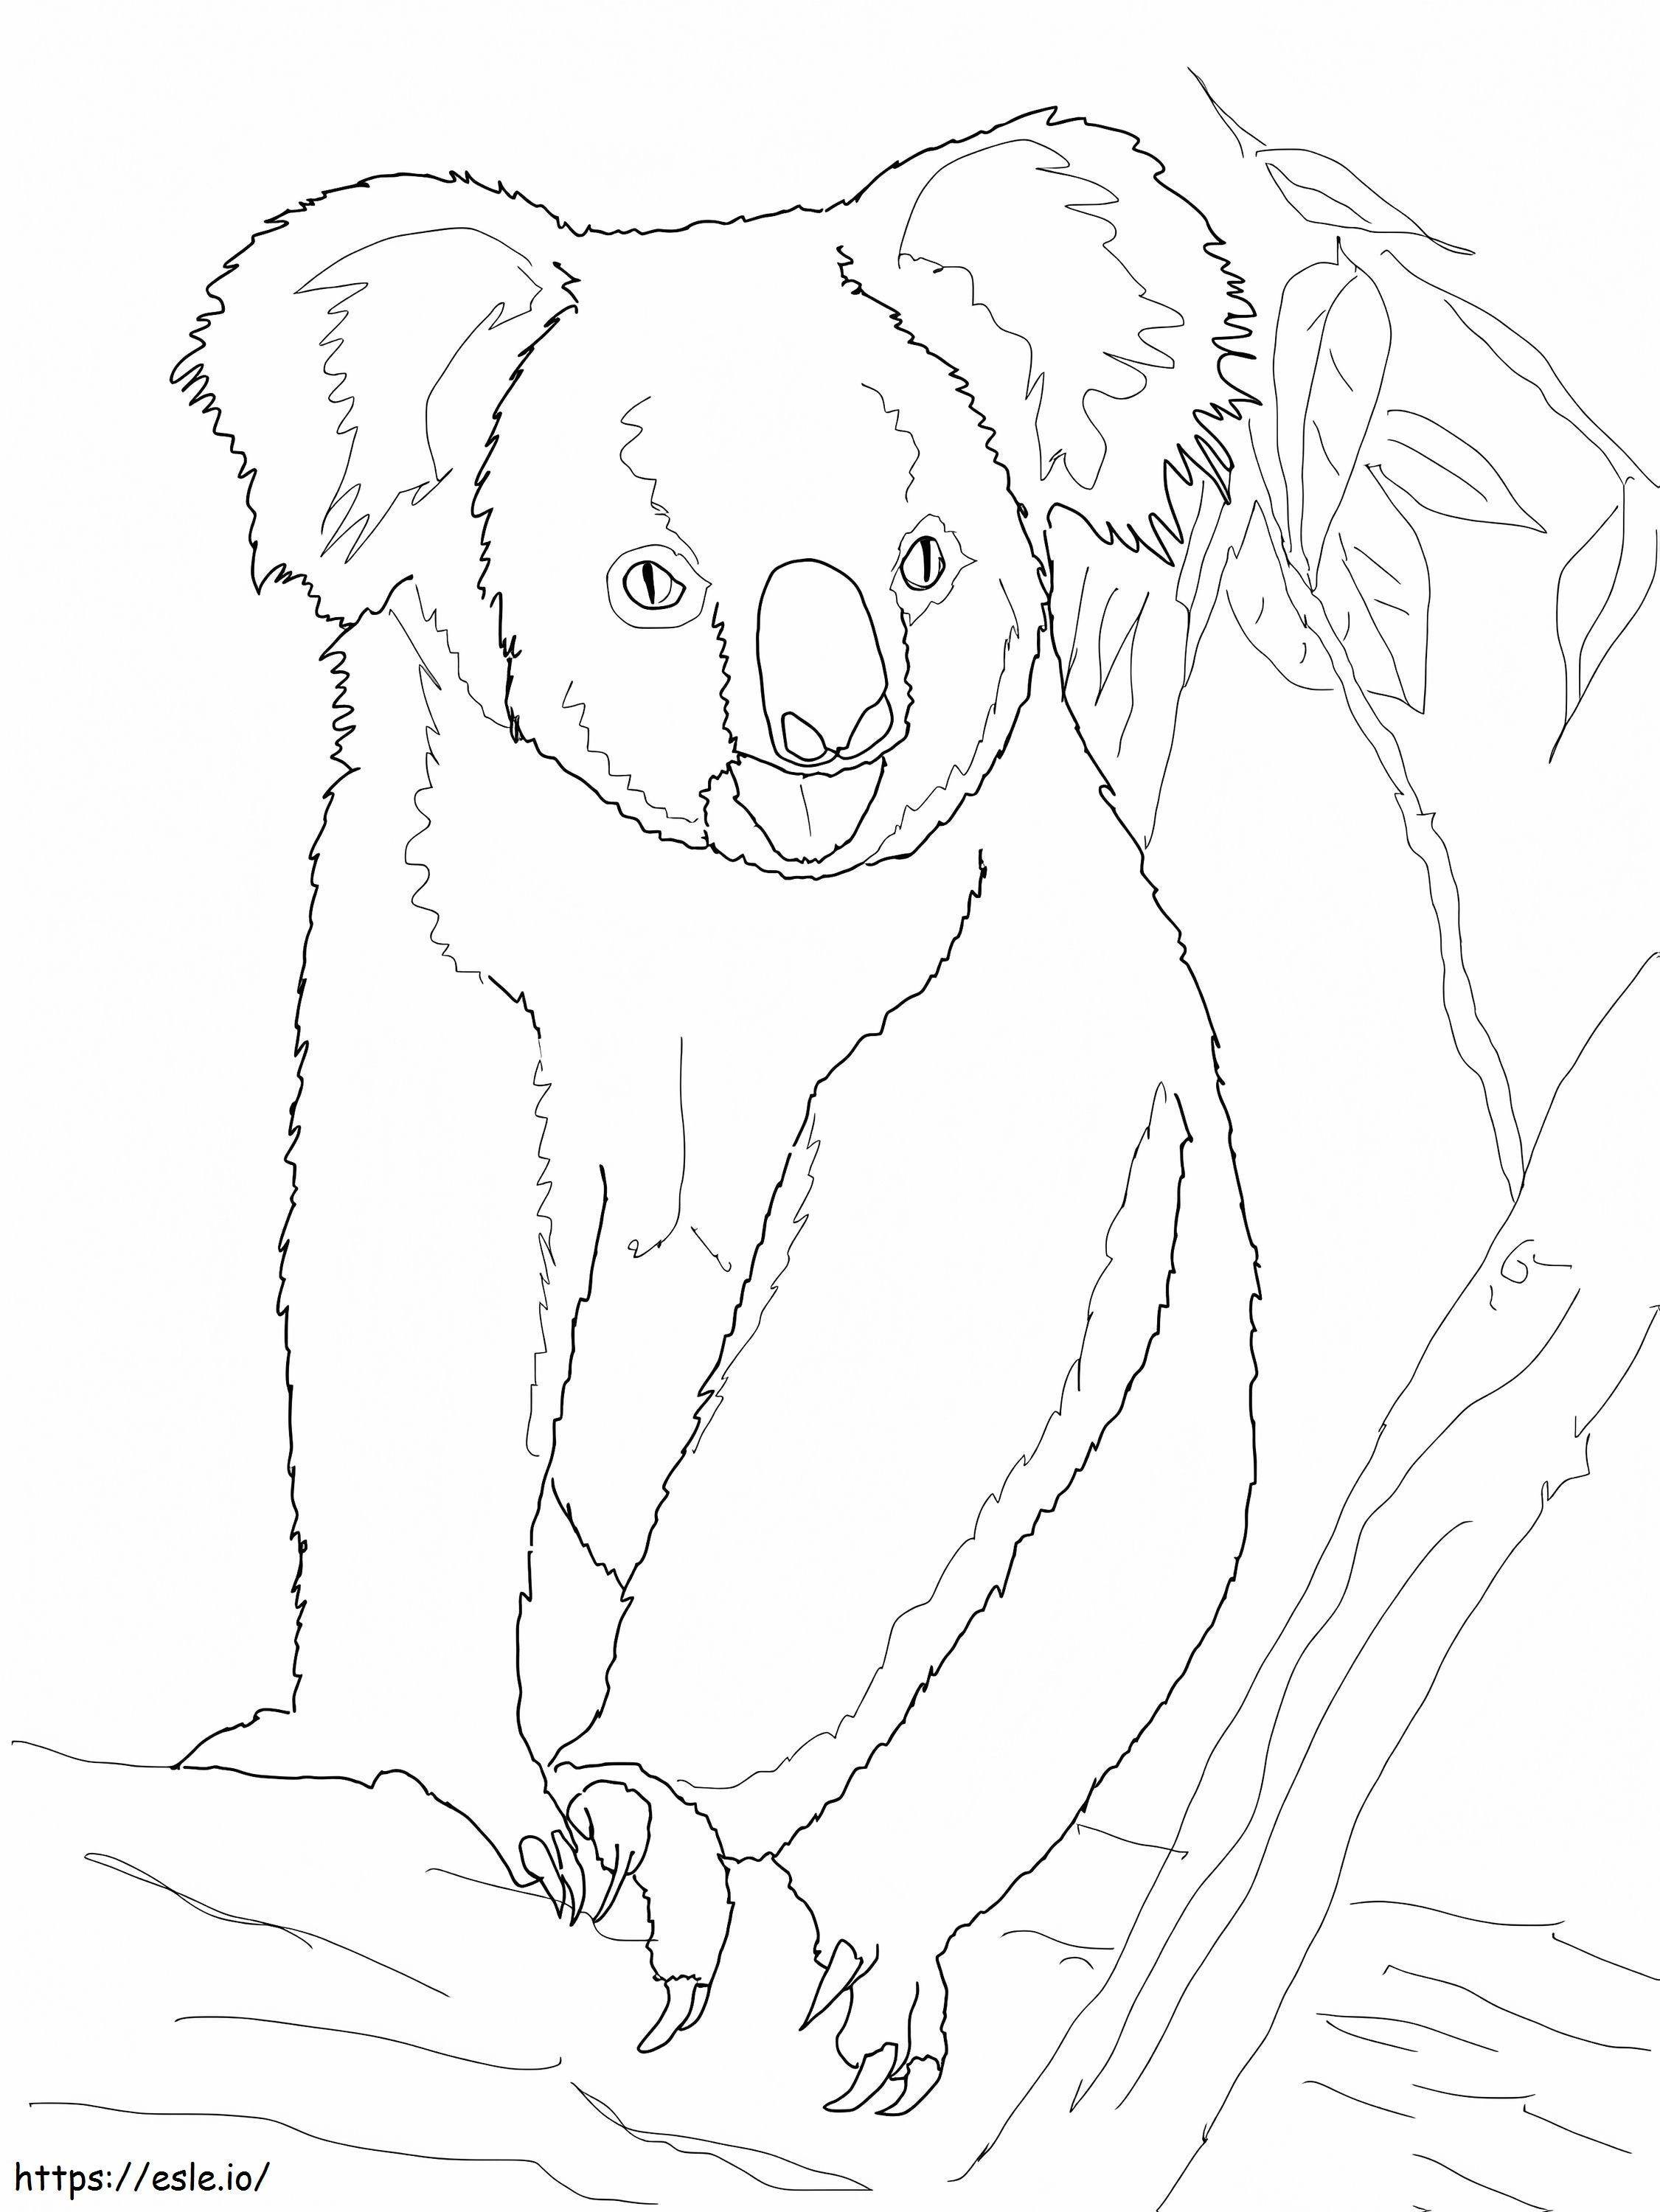 1594428772 Koalabär auf einem Baum ausmalbilder